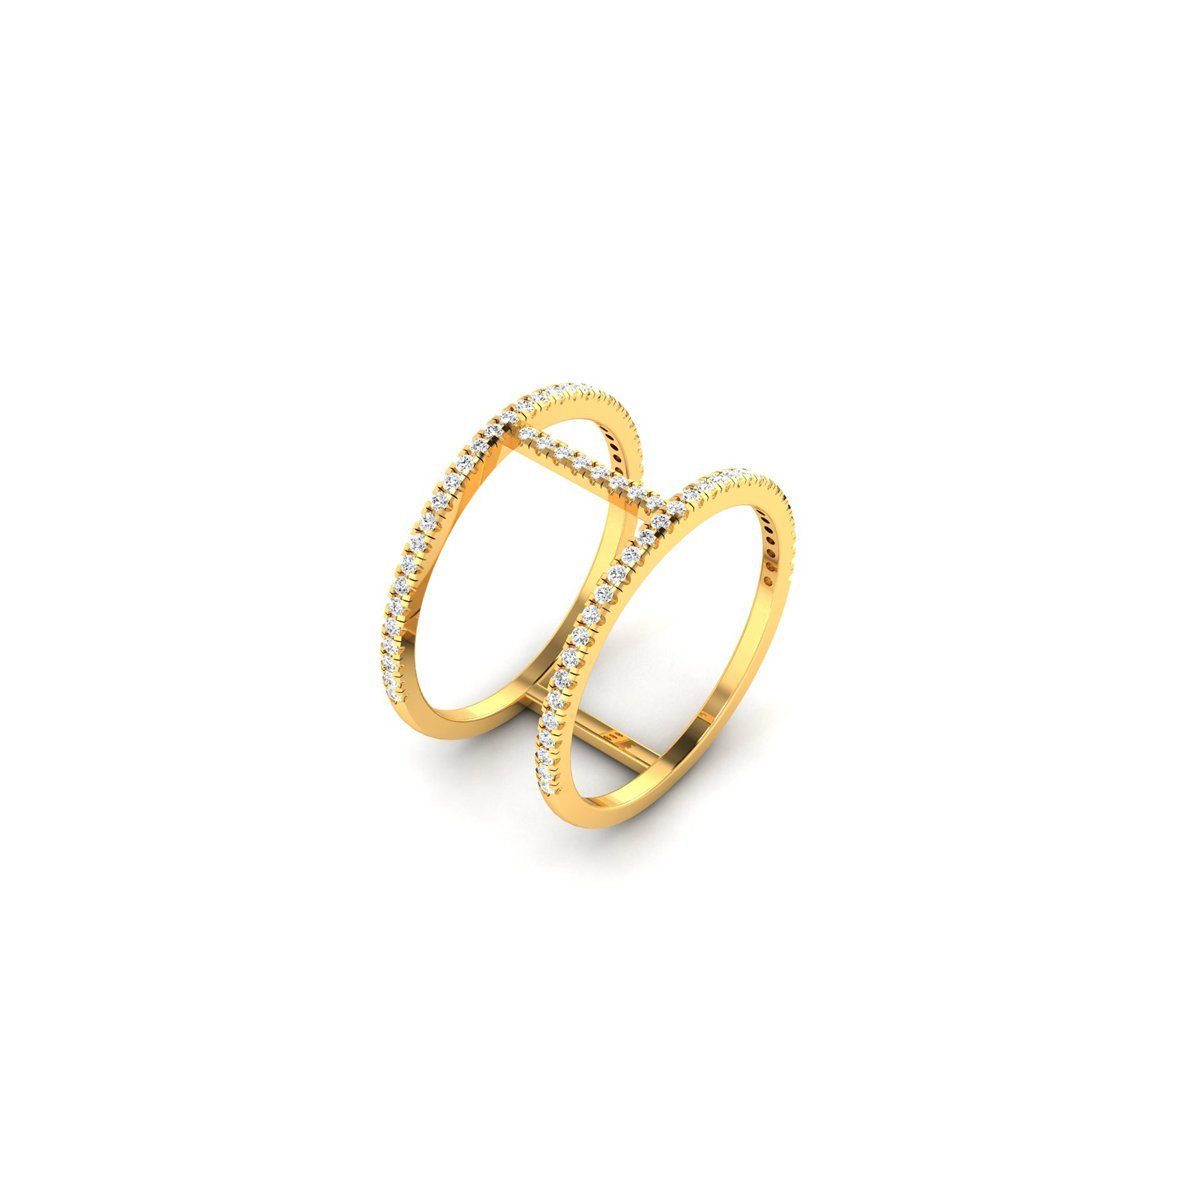 22K Yellow Gold Men's Ring. Ring Size: 7.0 - MRG-865